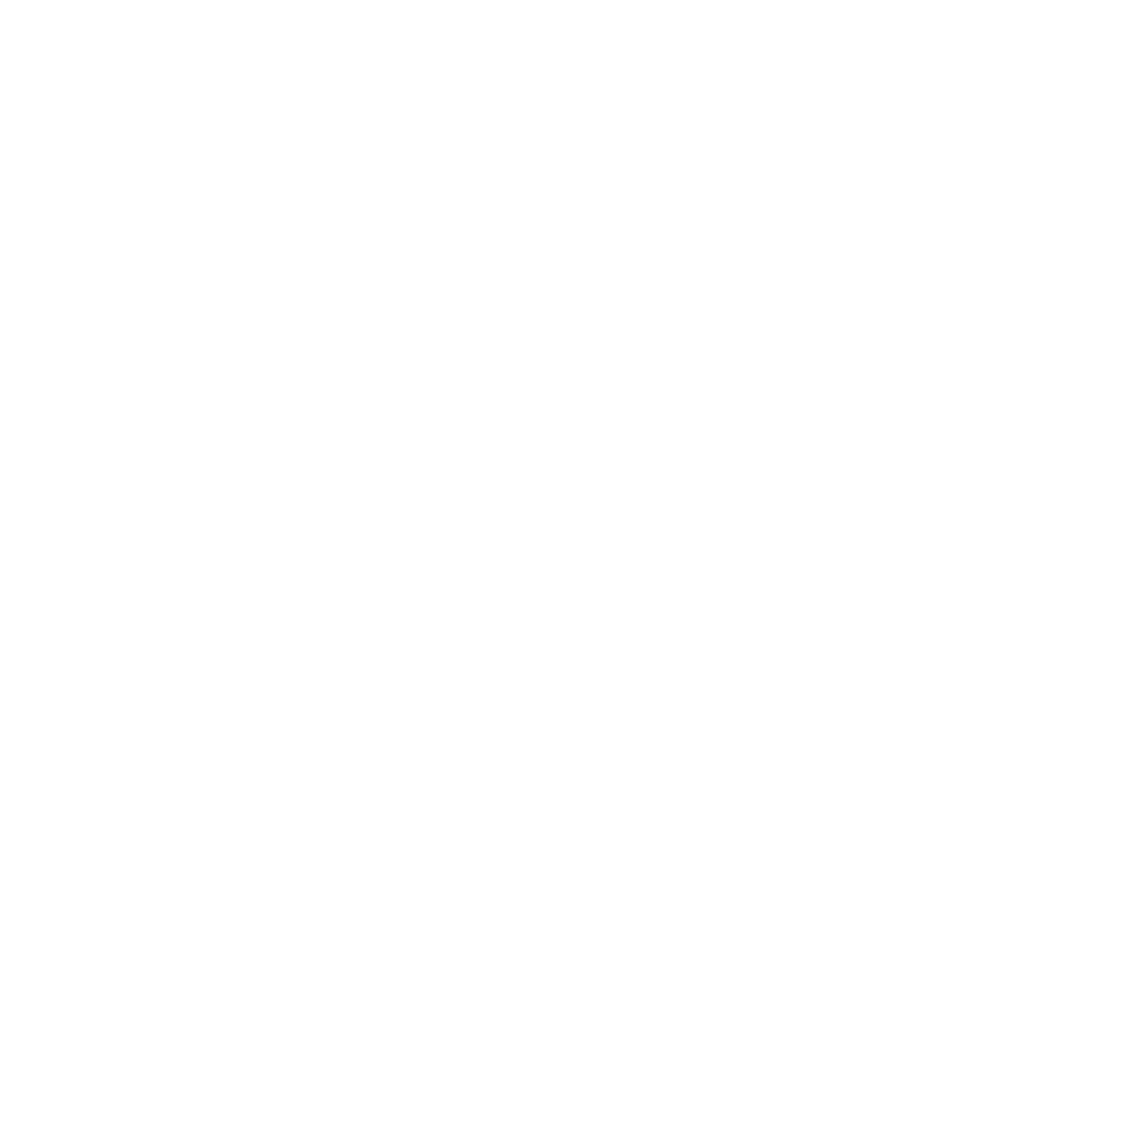 clyde co logo white